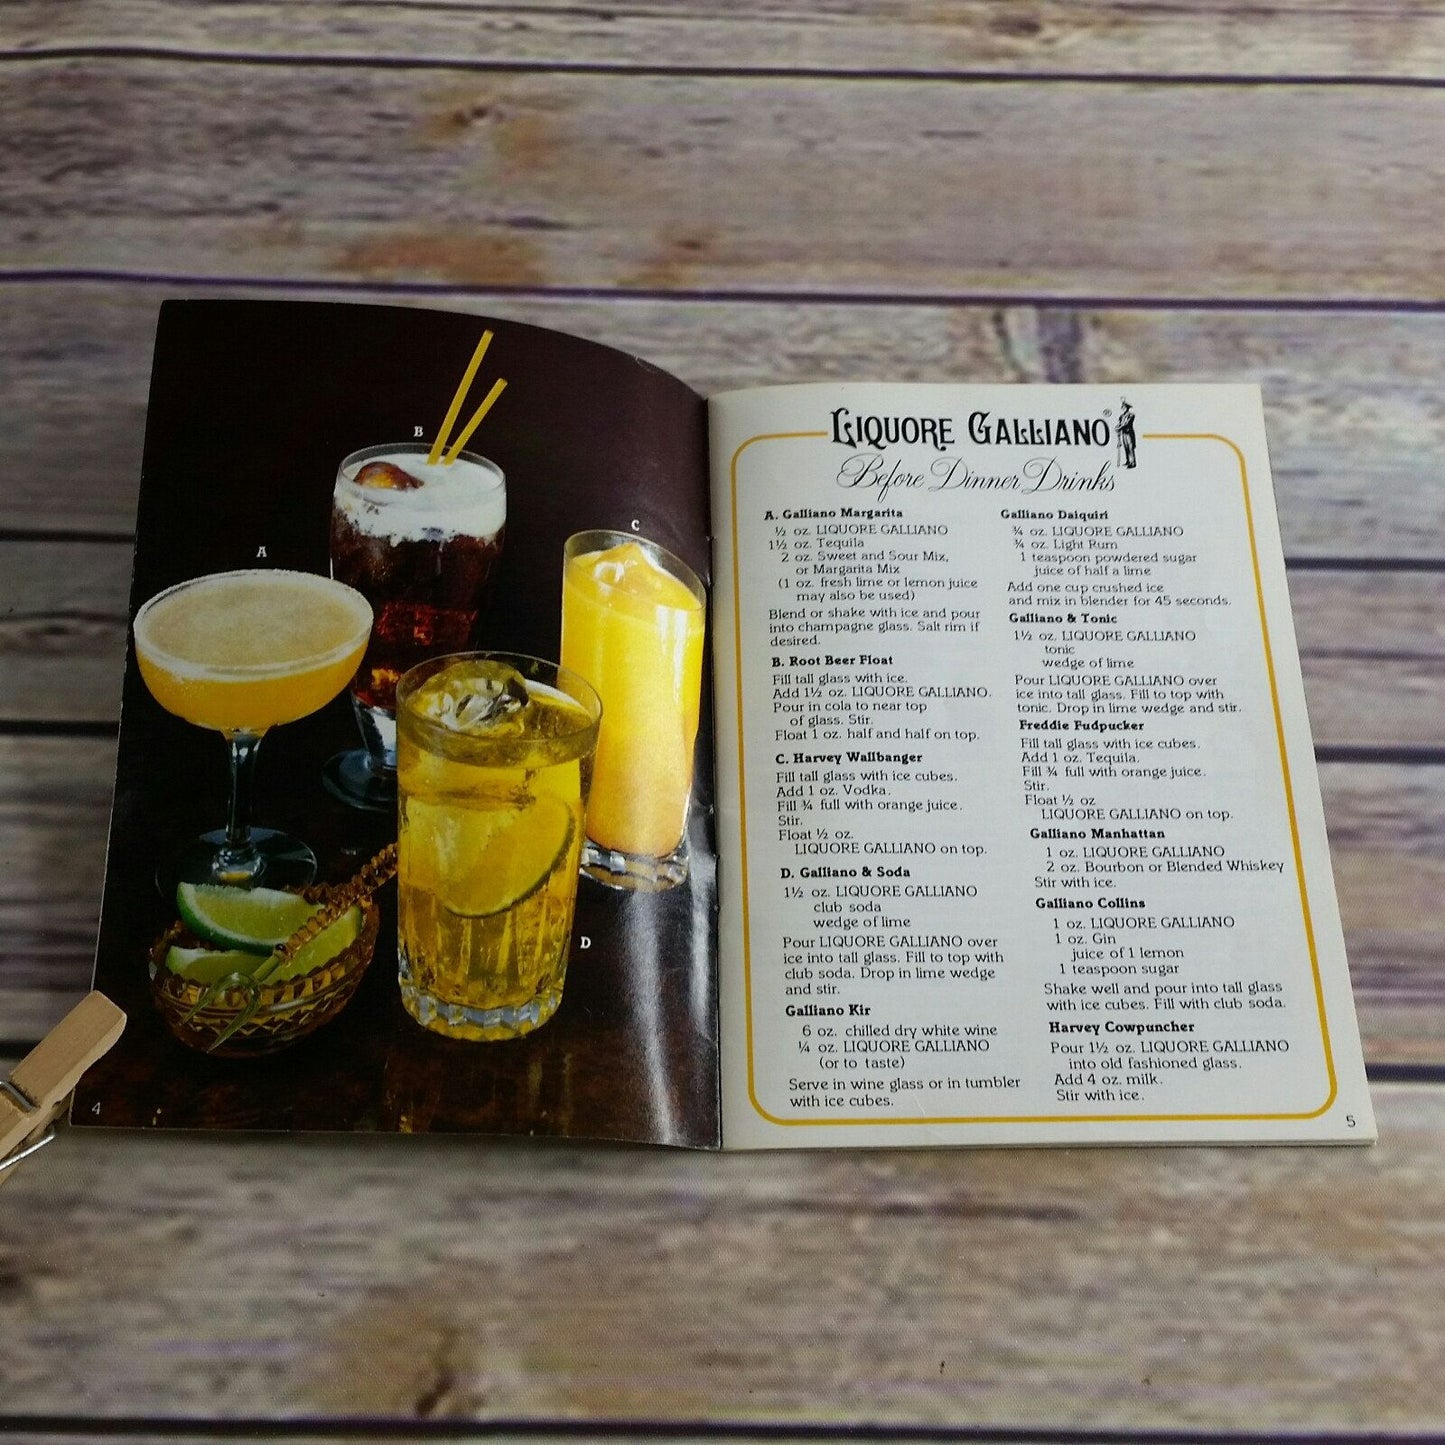 Vintage Cookbook Galliano Liqueur Recipes 1978 Italian Classics Recipes Alcohol Liquor Liquer Paperback Promo Booklet